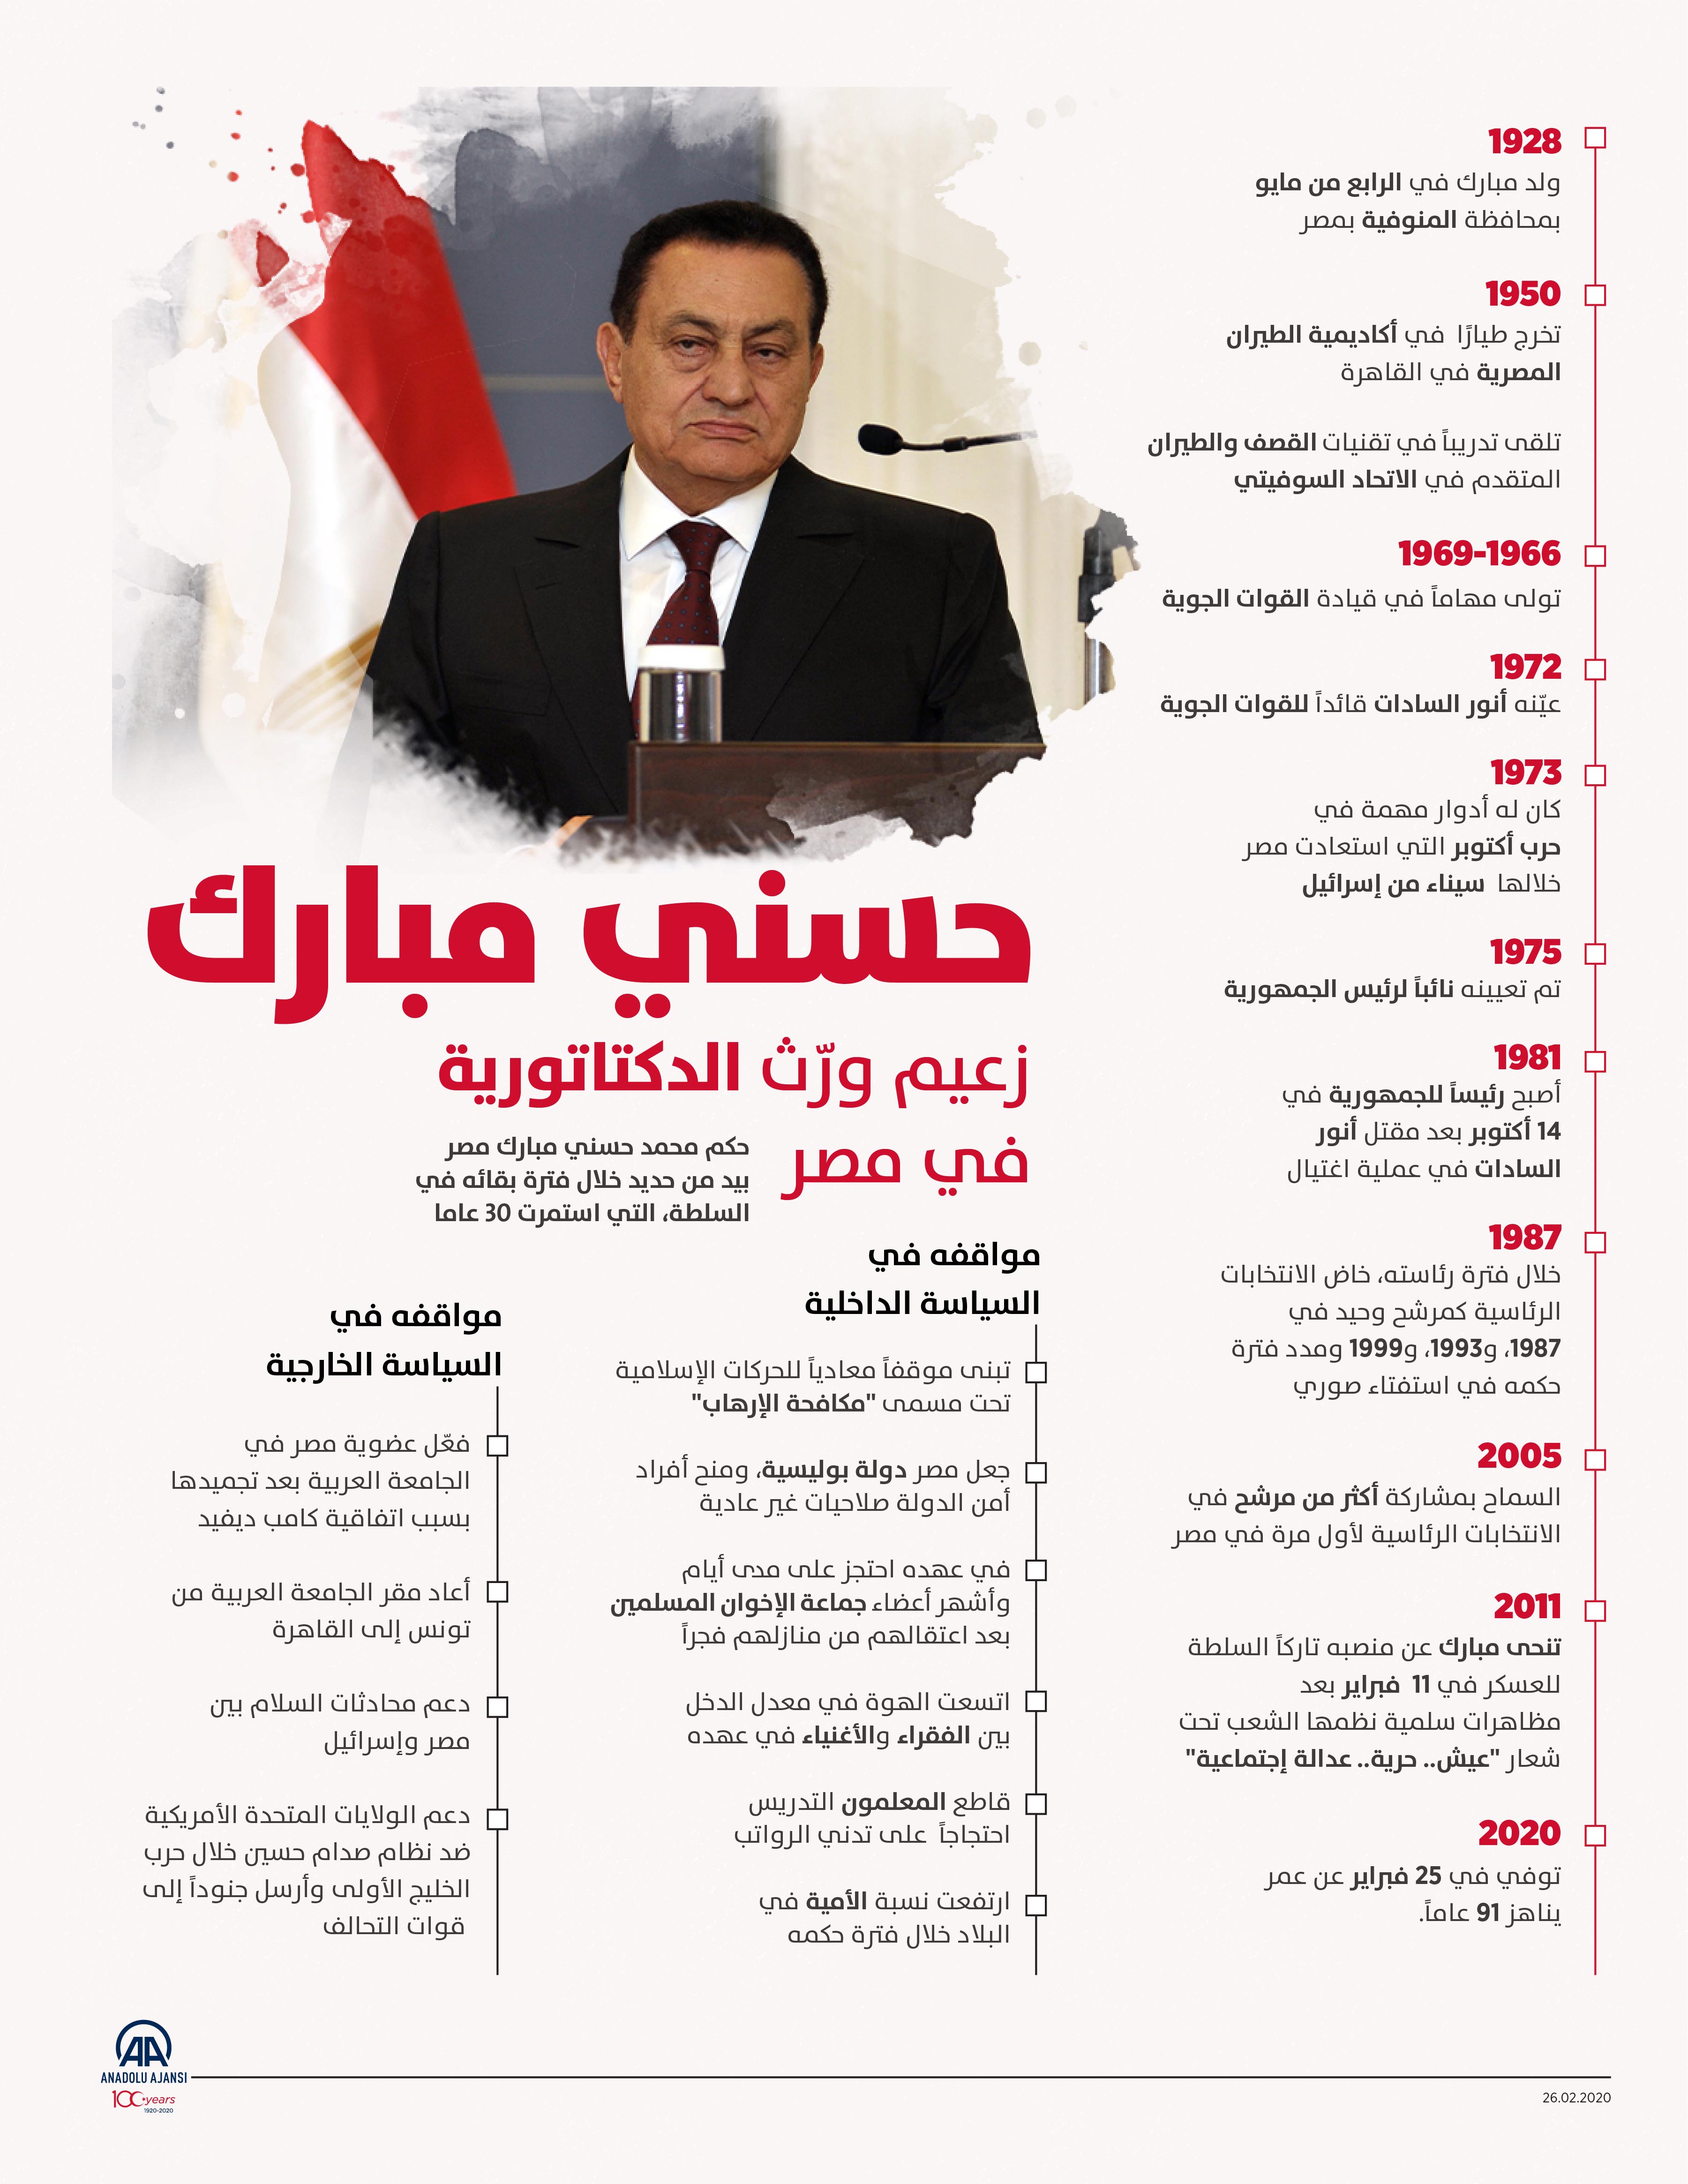 حسني مبارك زعيم ورّث الدكتاتورية في مصر